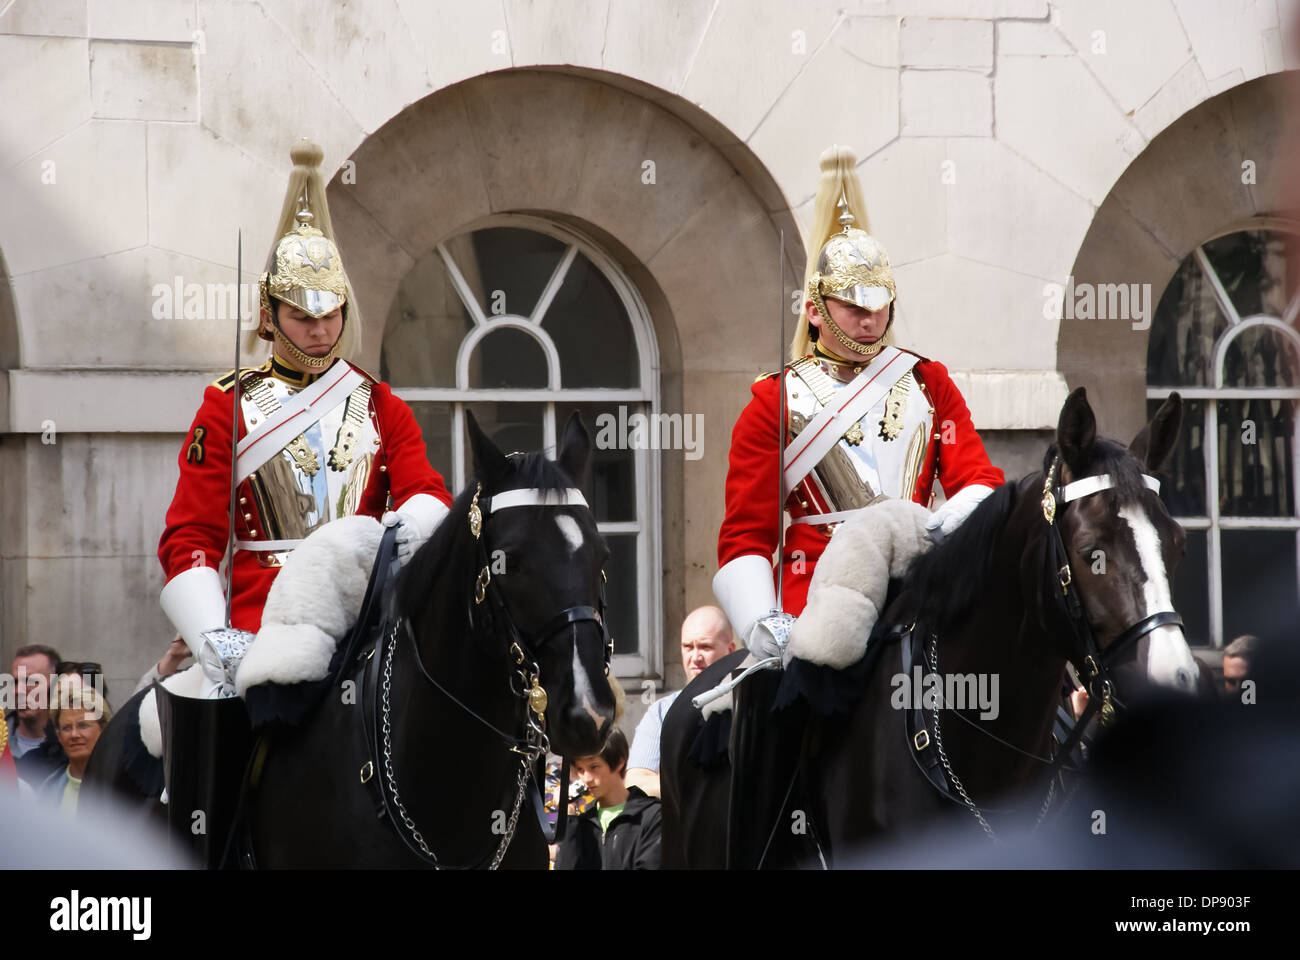 Deux gardes à cheval Cheval extérieur gardes à Whitehall, Londres Angleterre Royaume-Uni UK Banque D'Images